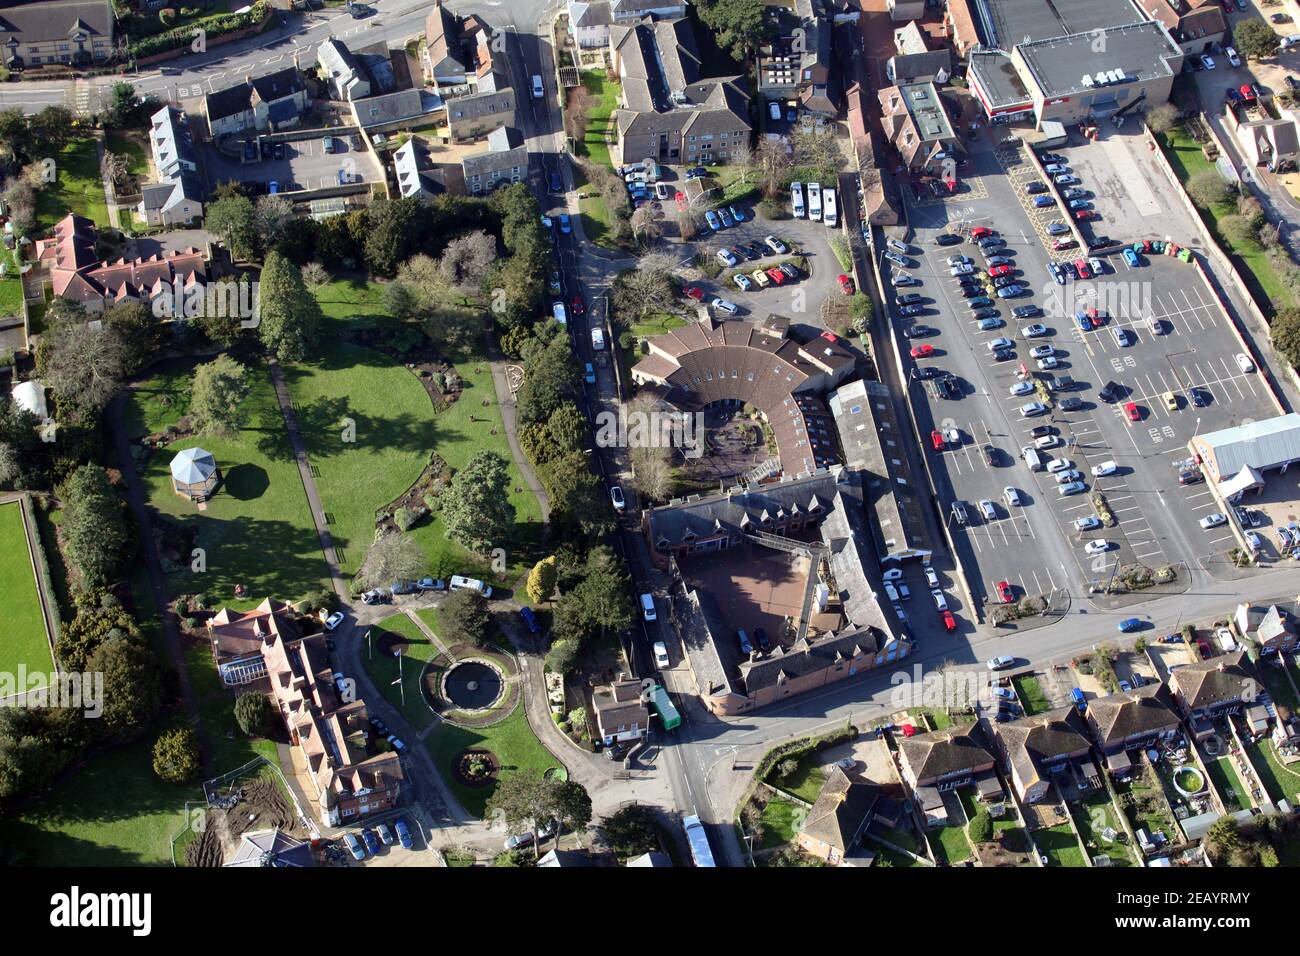 Luftaufnahme von Bicester, Oxfordshire mit Garth Park, Bicester Children & Family Services und Courtyard Youth Arts Centre Gebäuden prominent Stockfoto